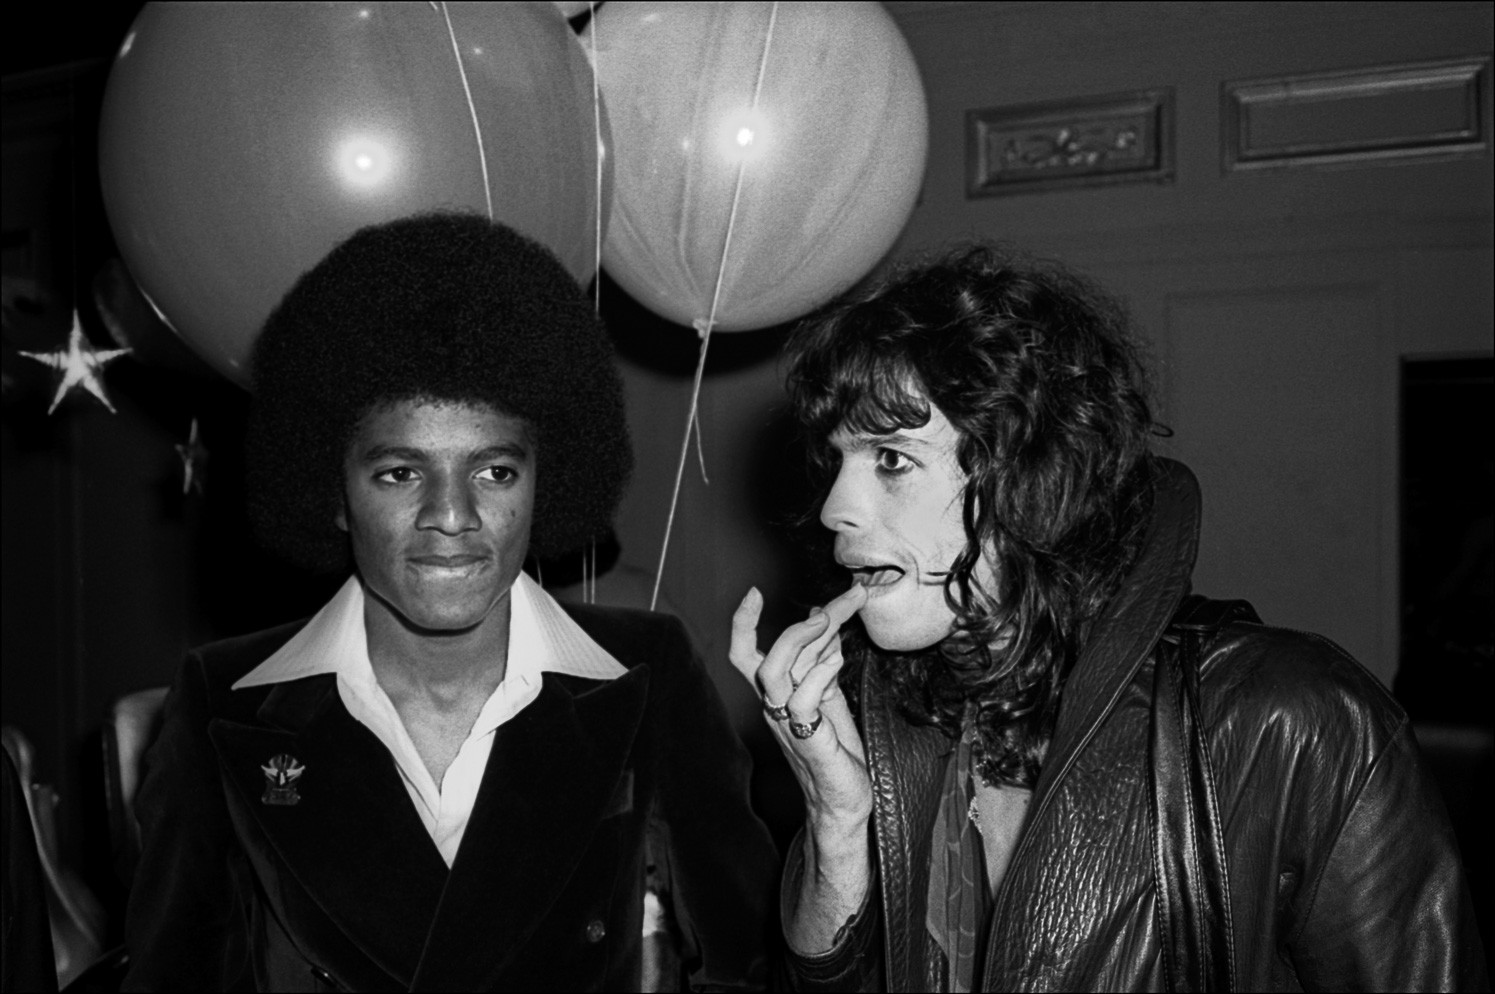 Майкл Джексон и Стив Тайлер на вечеринке Битломания в Студия 54, 1977 год. Фотограф Аллан Танненбаум